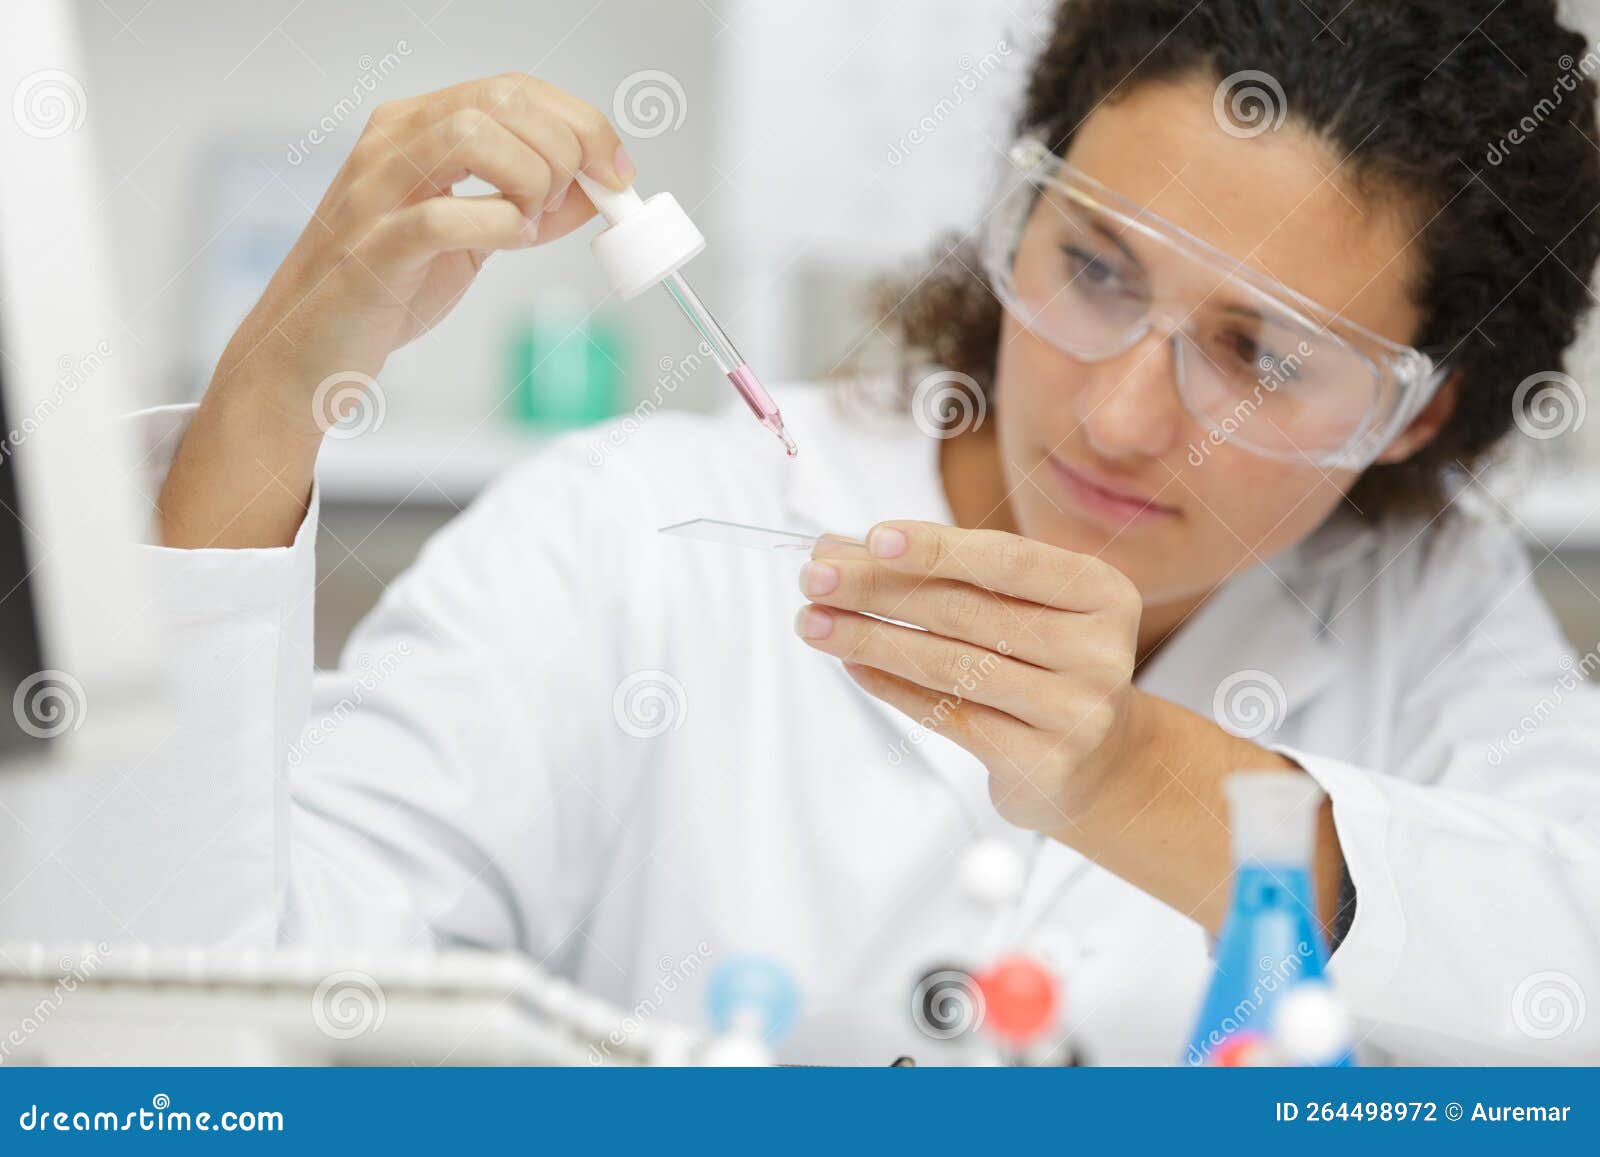 donna in laboratorio ricerca o analisi chimica e scienza